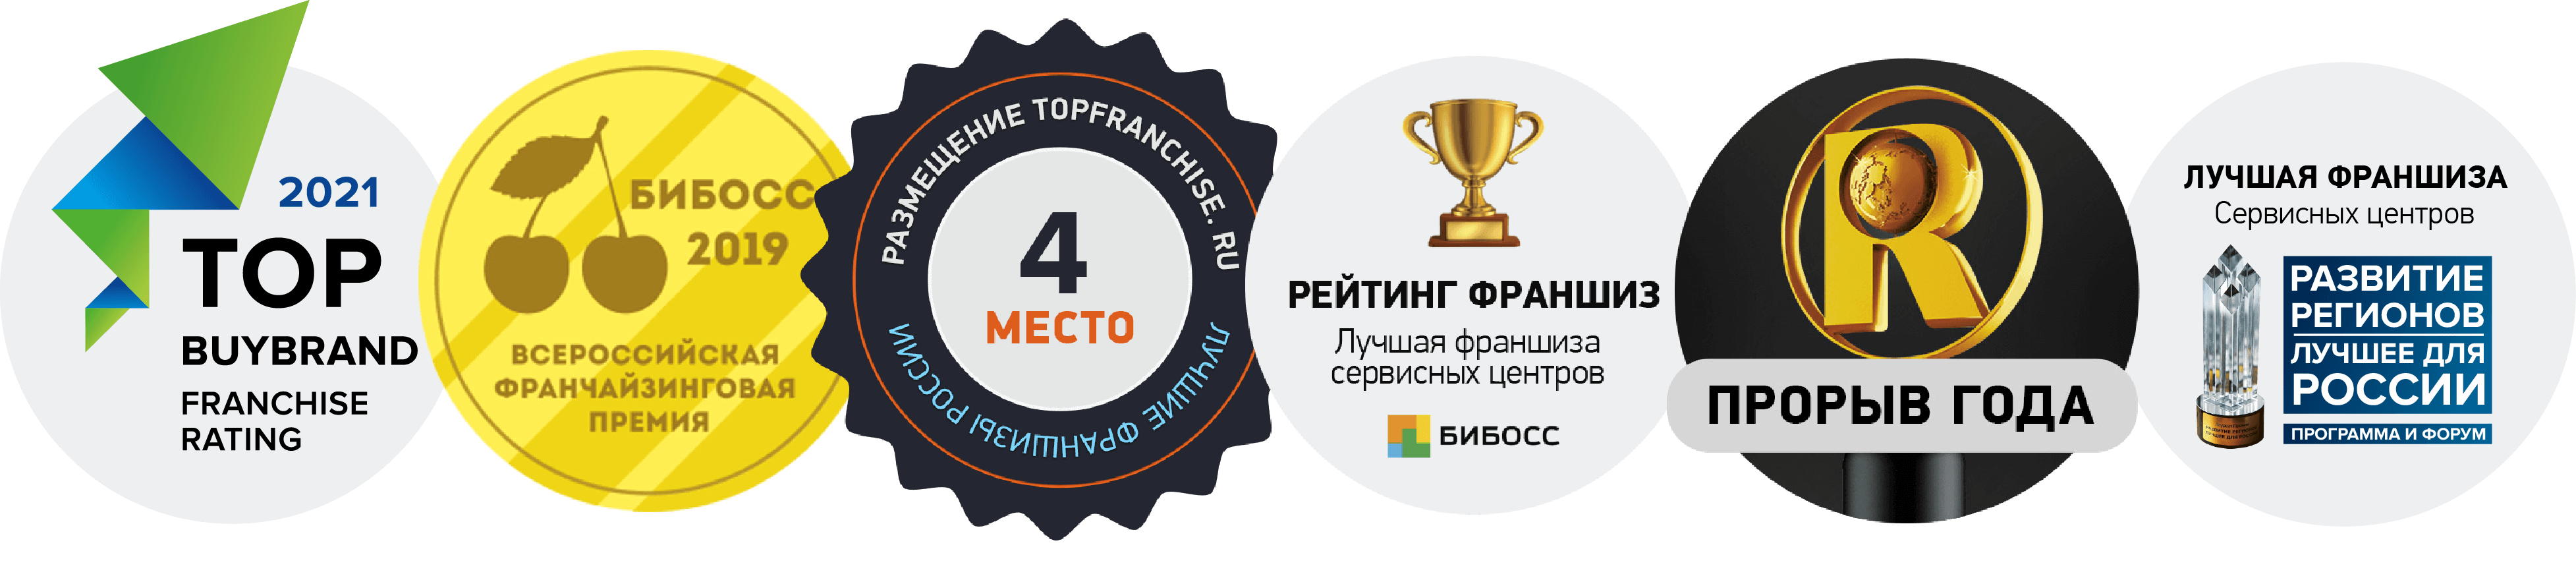 Pedant.ru - лидер всех рейтингов франшиз